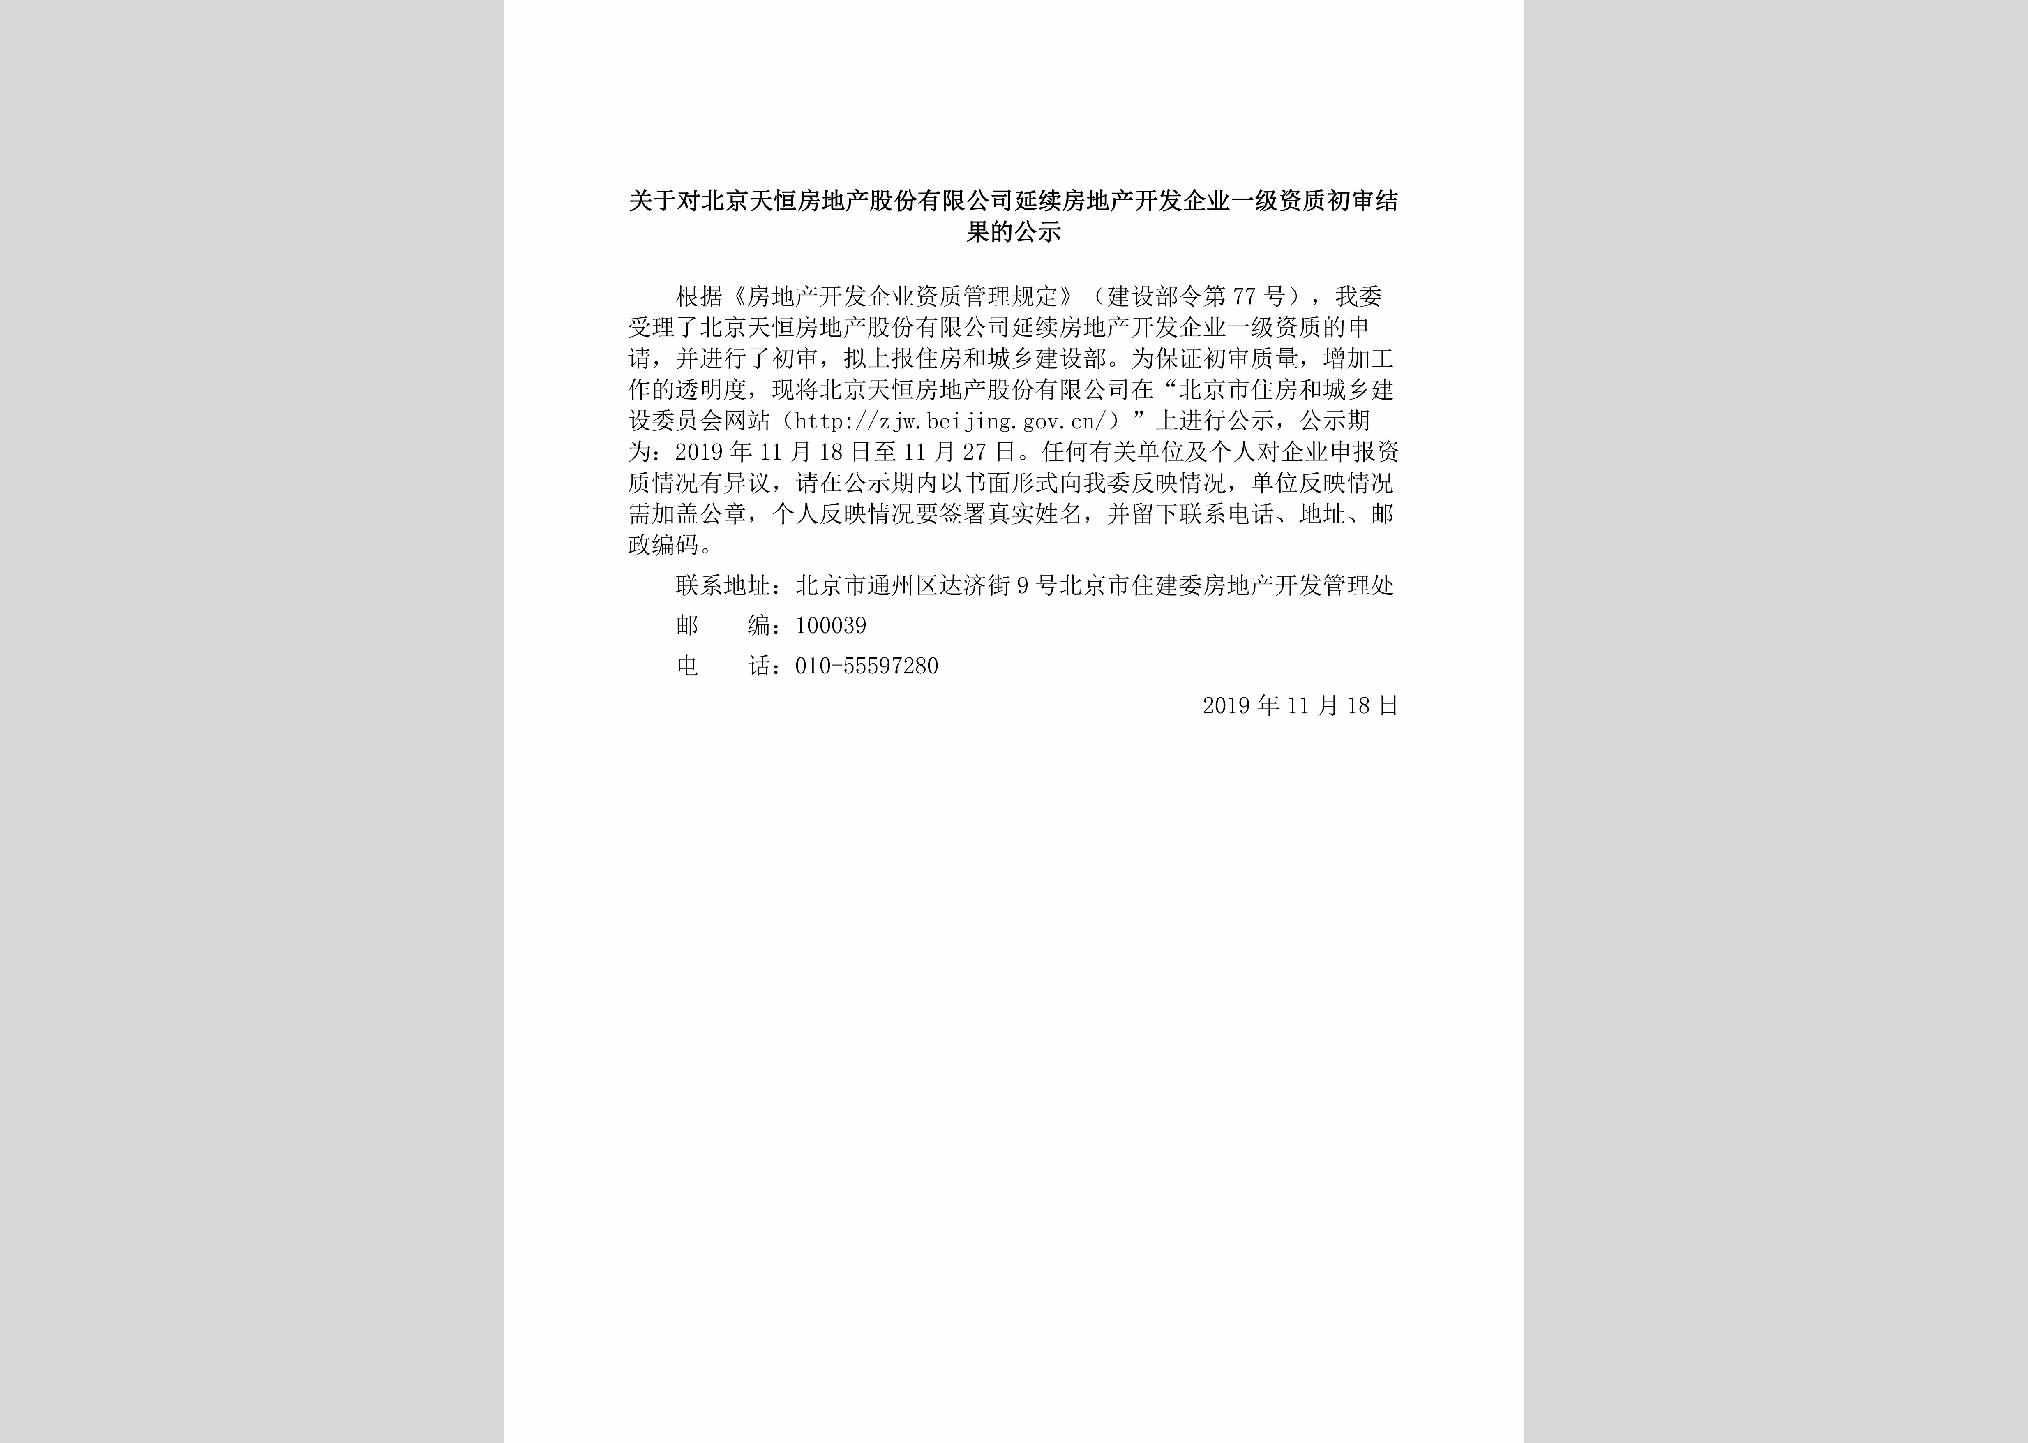 BJ-BJTHFDCY-2019：关于对北京天恒房地产股份有限公司延续房地产开发企业一级资质初审结果的公示